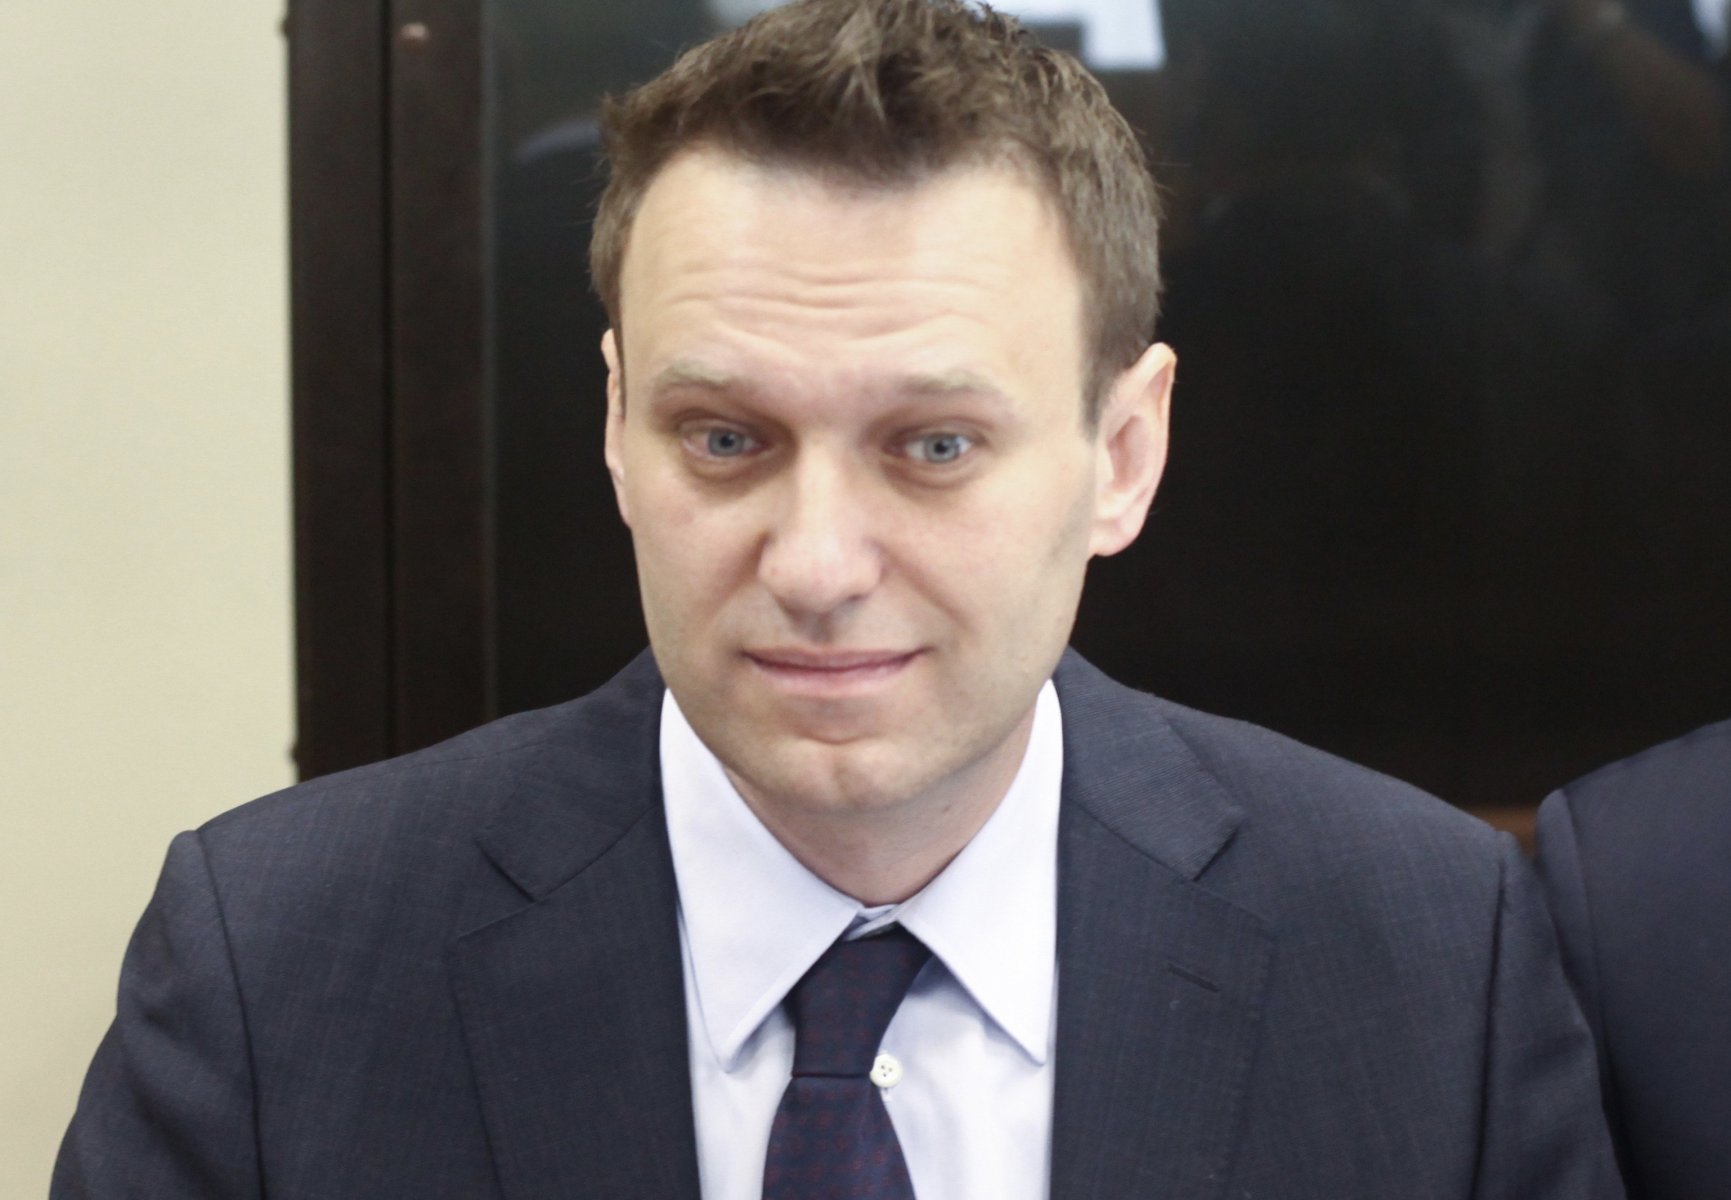 Супруга Навального говорила врачам, что диета могла быть причиной болезни мужа